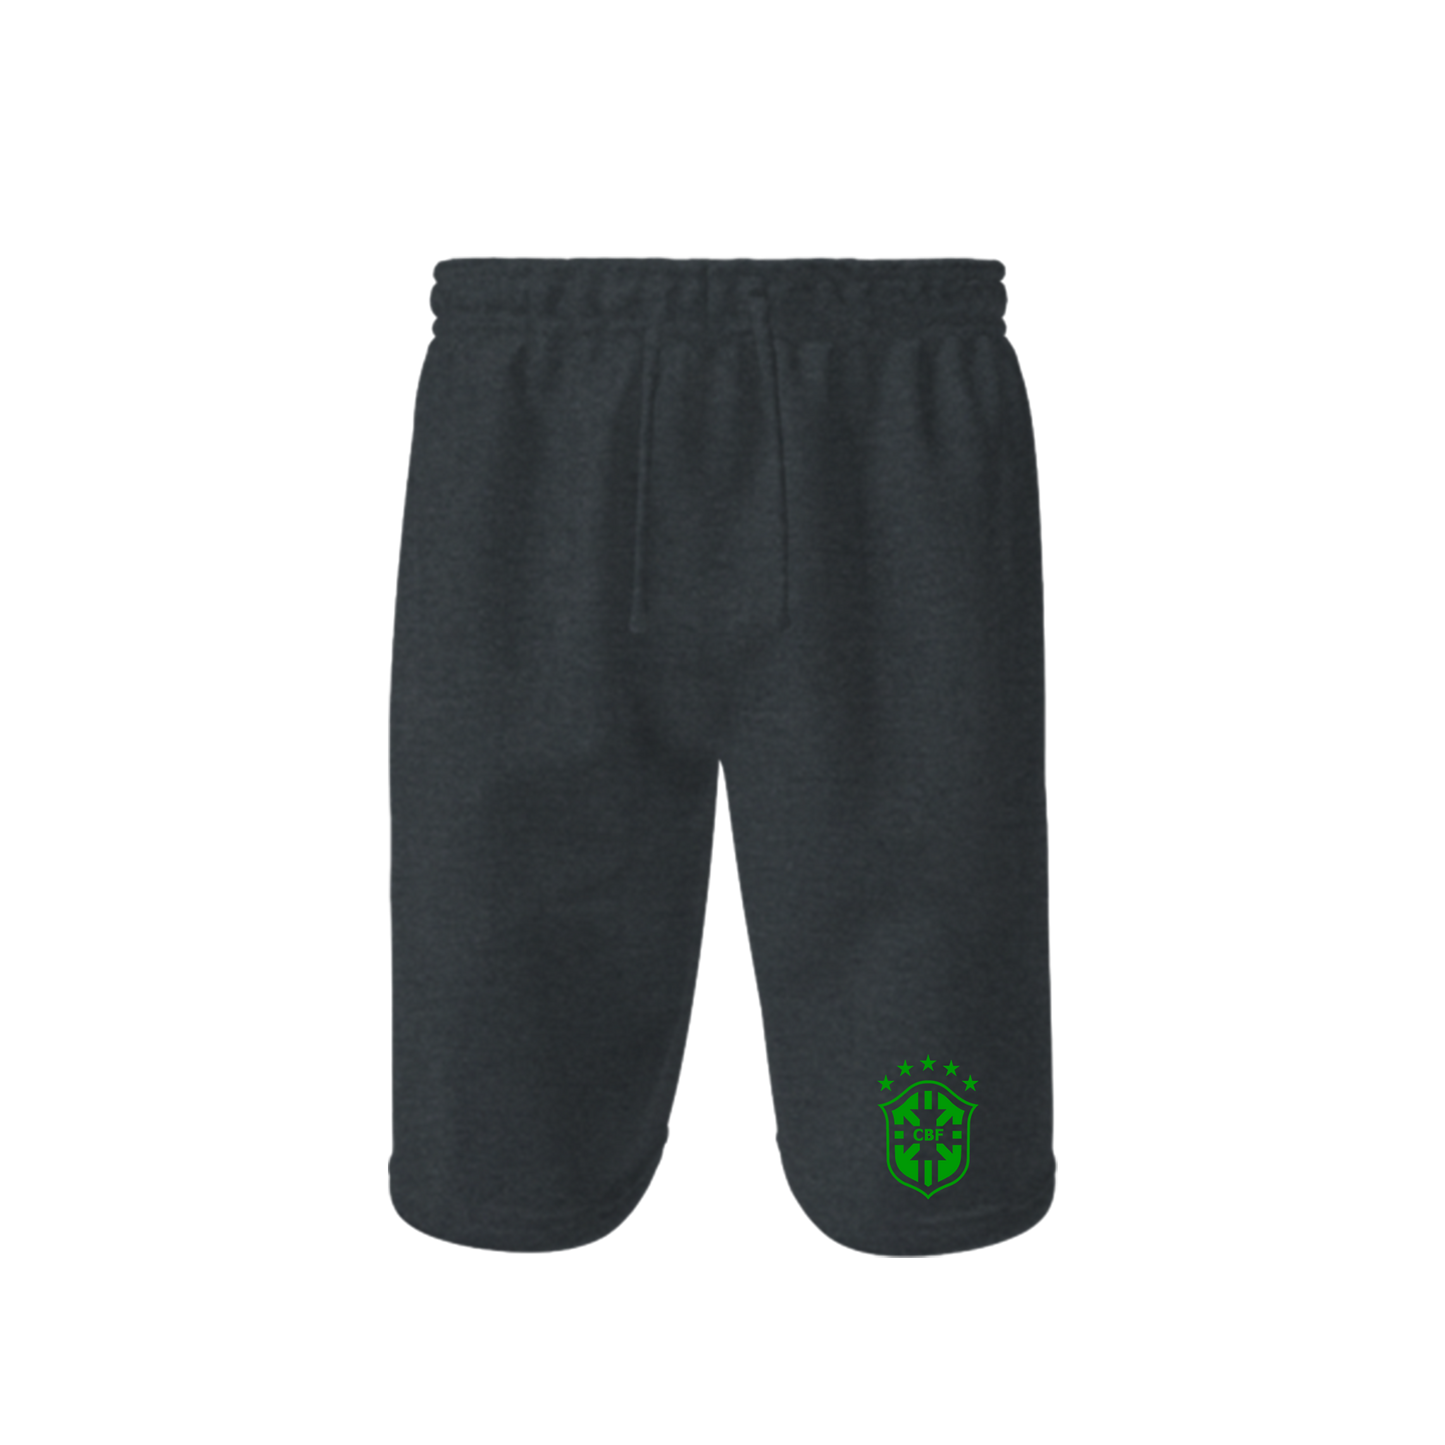 Men's Brazil Soccer Athletic Fleece Shorts